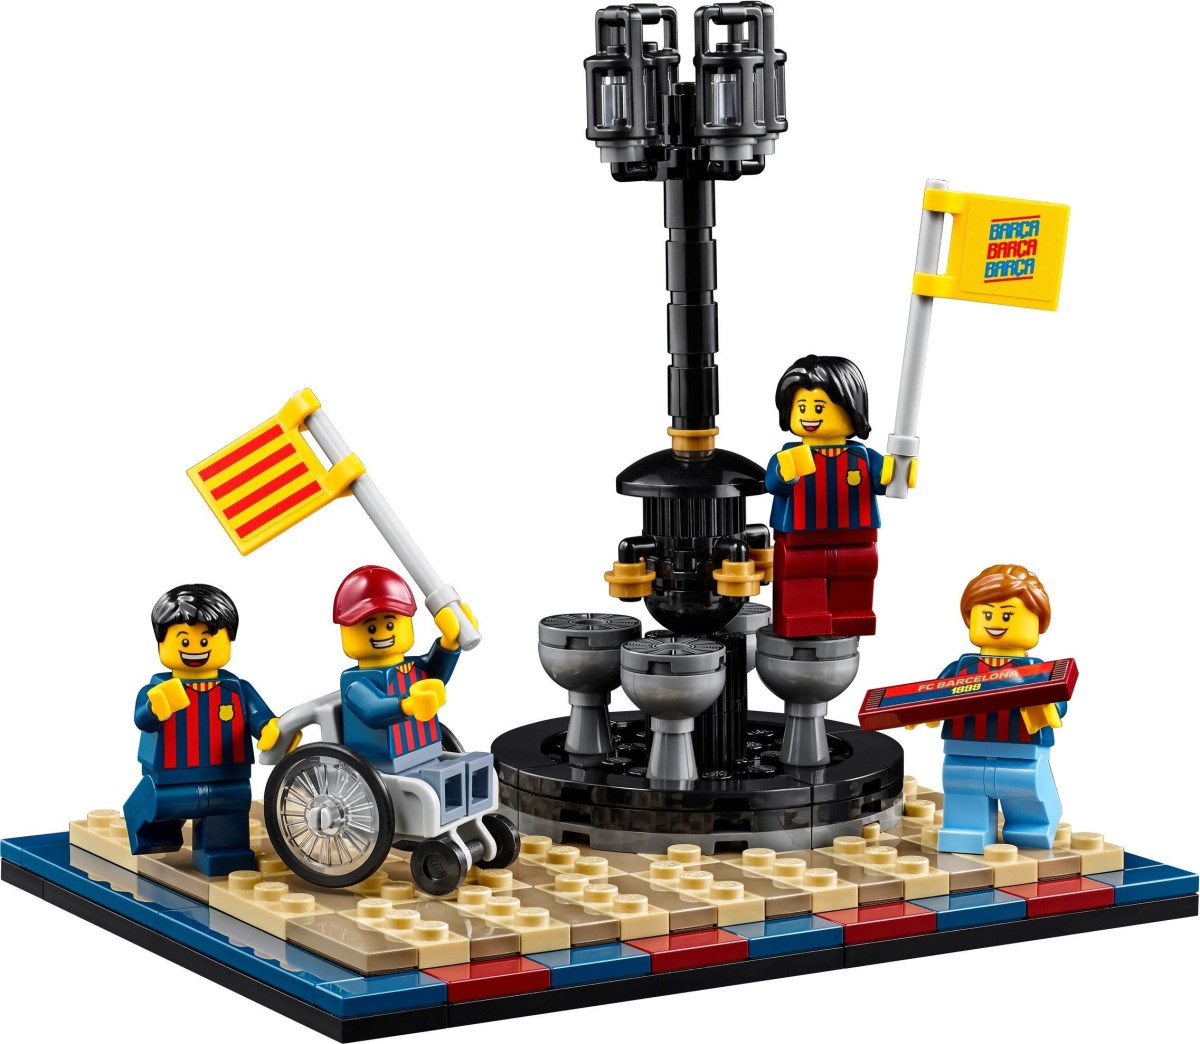 First Images of LEGO FC Barcelona Celebration (40485) GWP Set Revealed